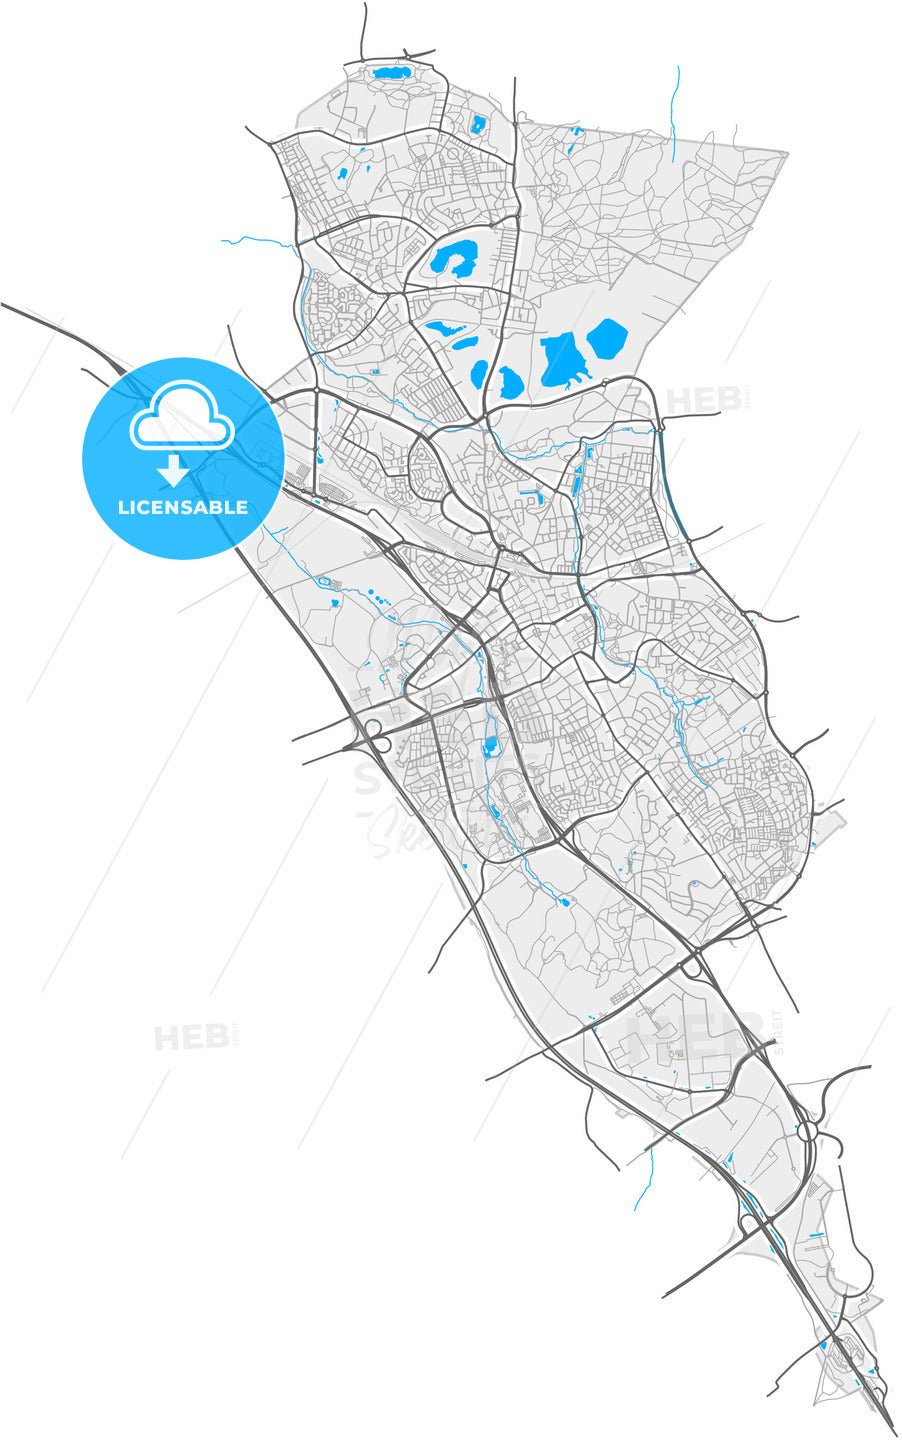 Heerlen, Limburg, Netherlands, high quality vector map